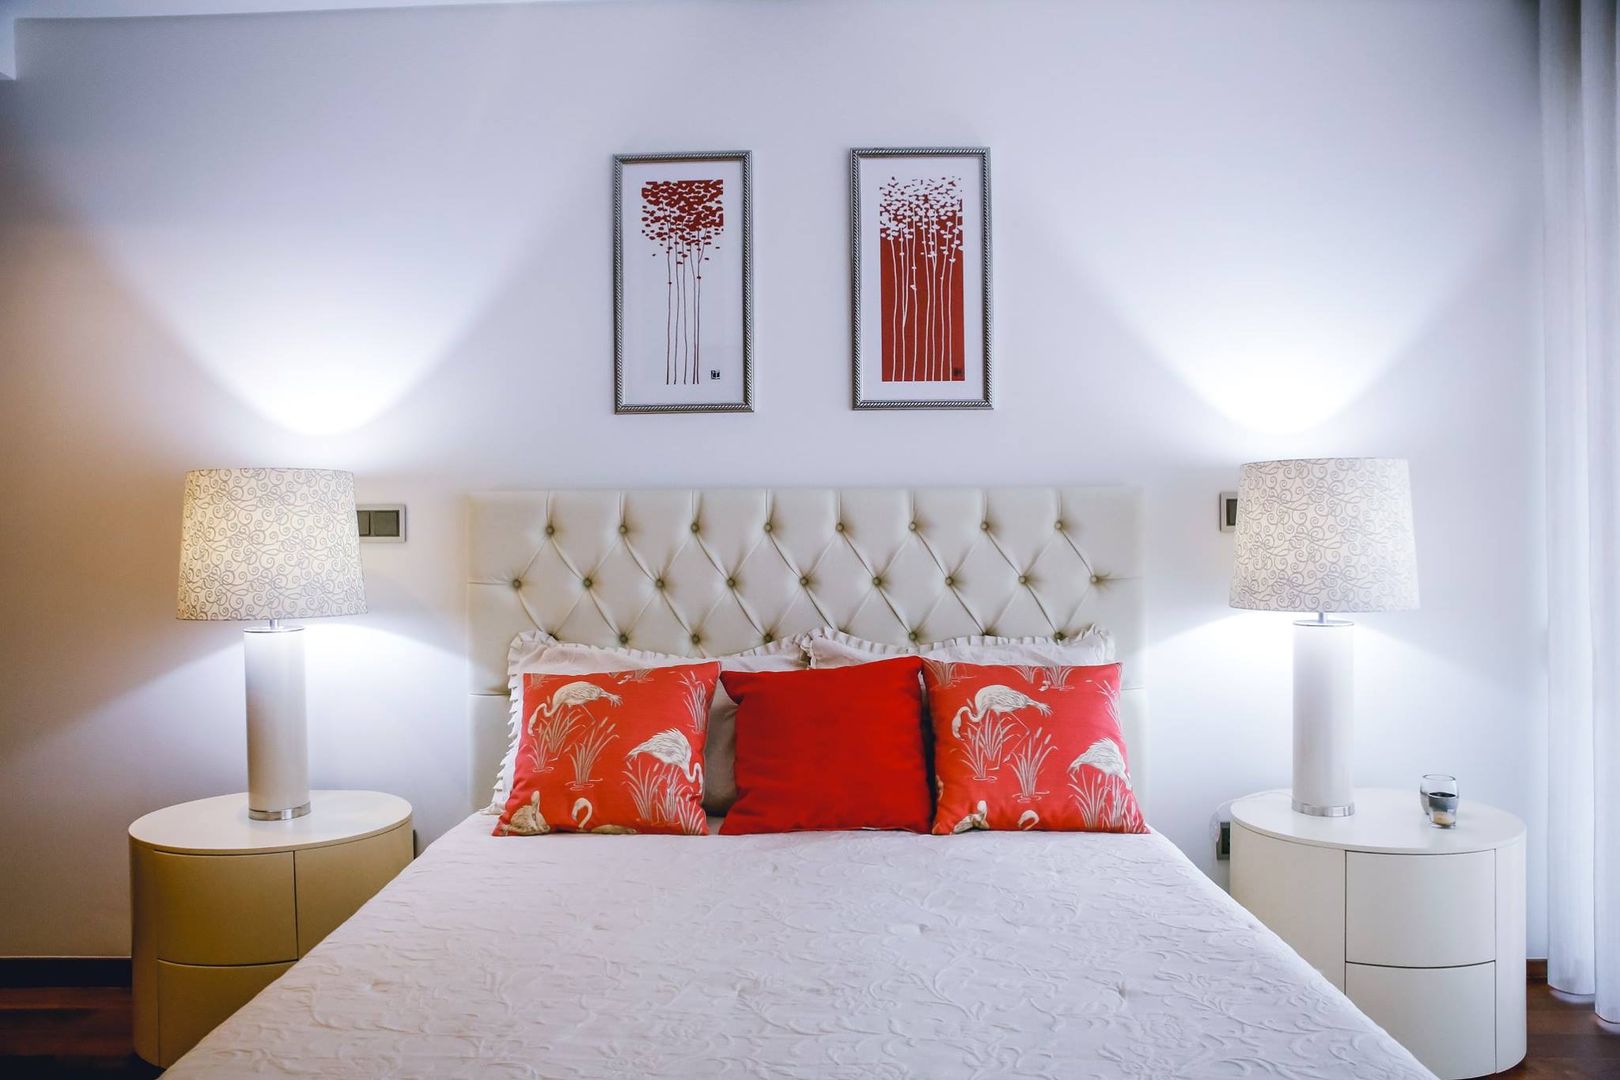 Quarto de hospedes "Cereja", Musgo Dourado Musgo Dourado Modern style bedroom Leather Grey Beds & headboards